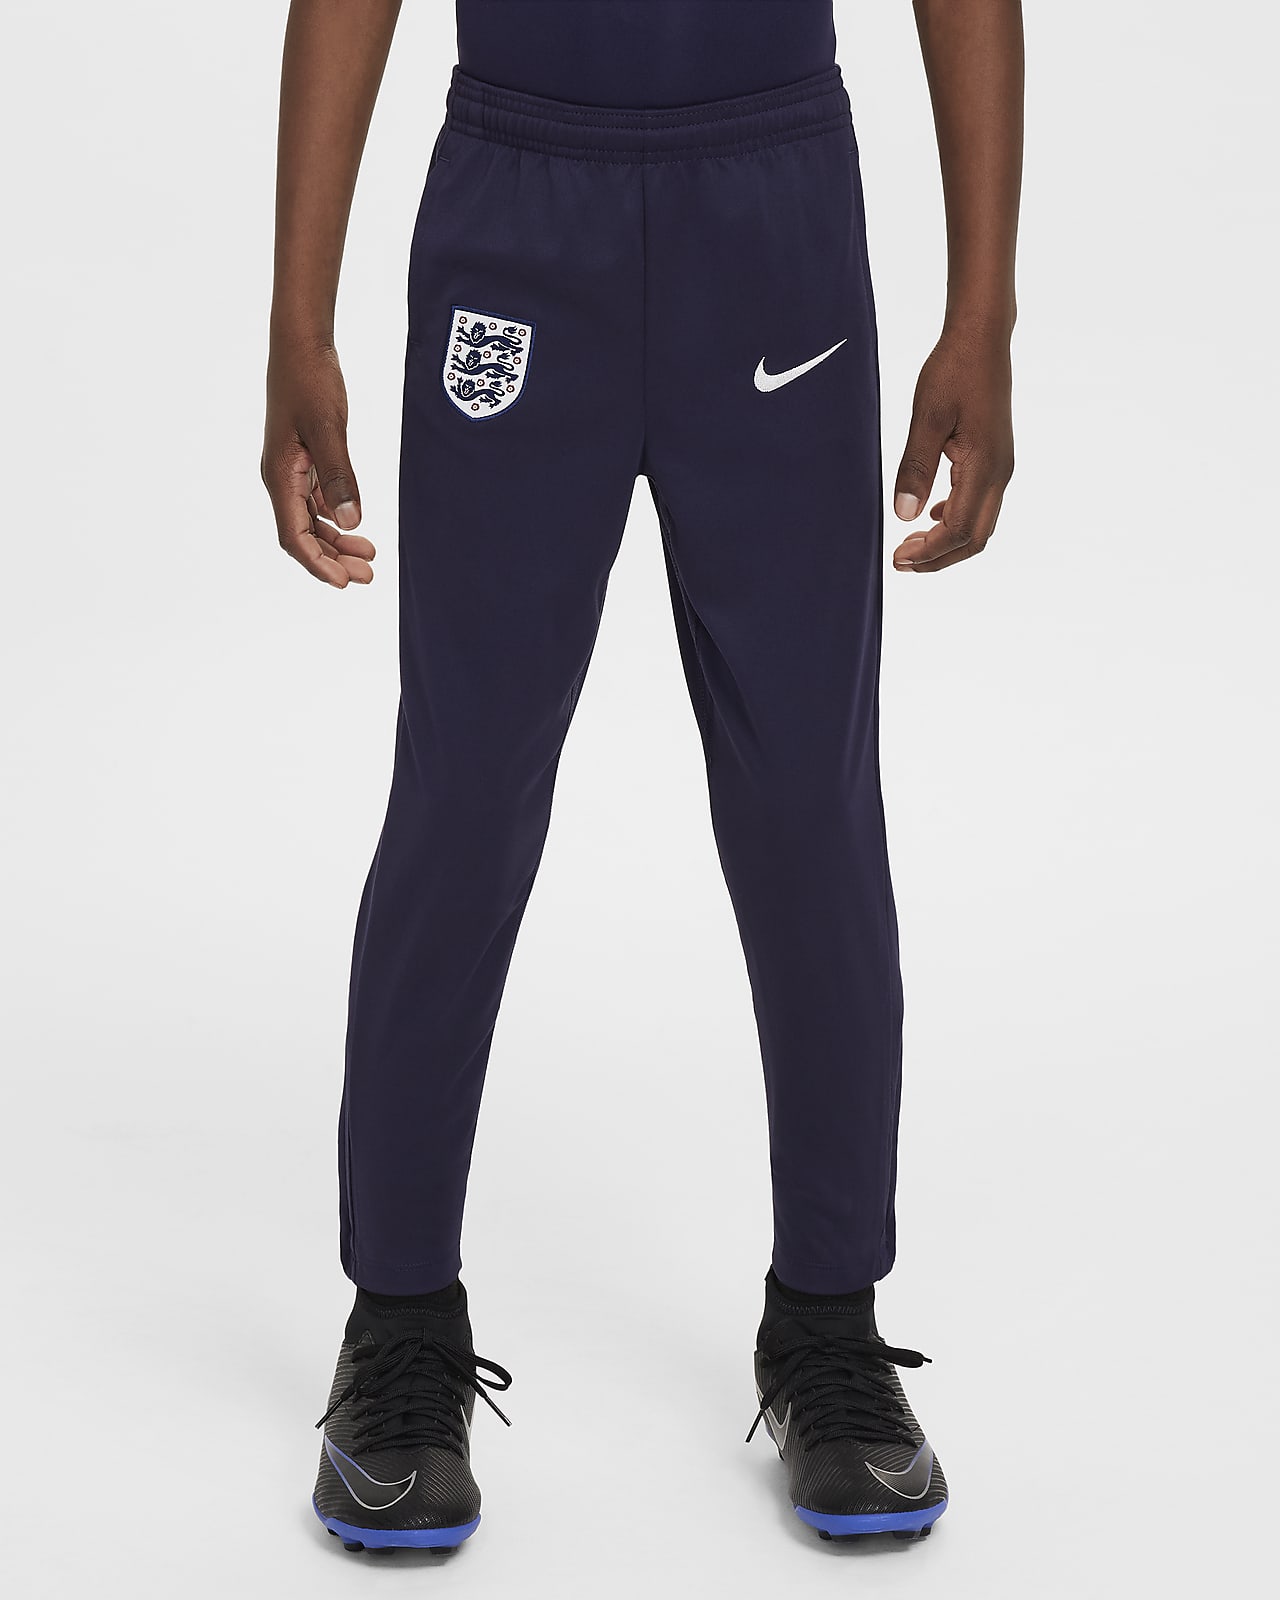 England Academy Pro Nike Dri-FIT strikket fotballbukse til små barn